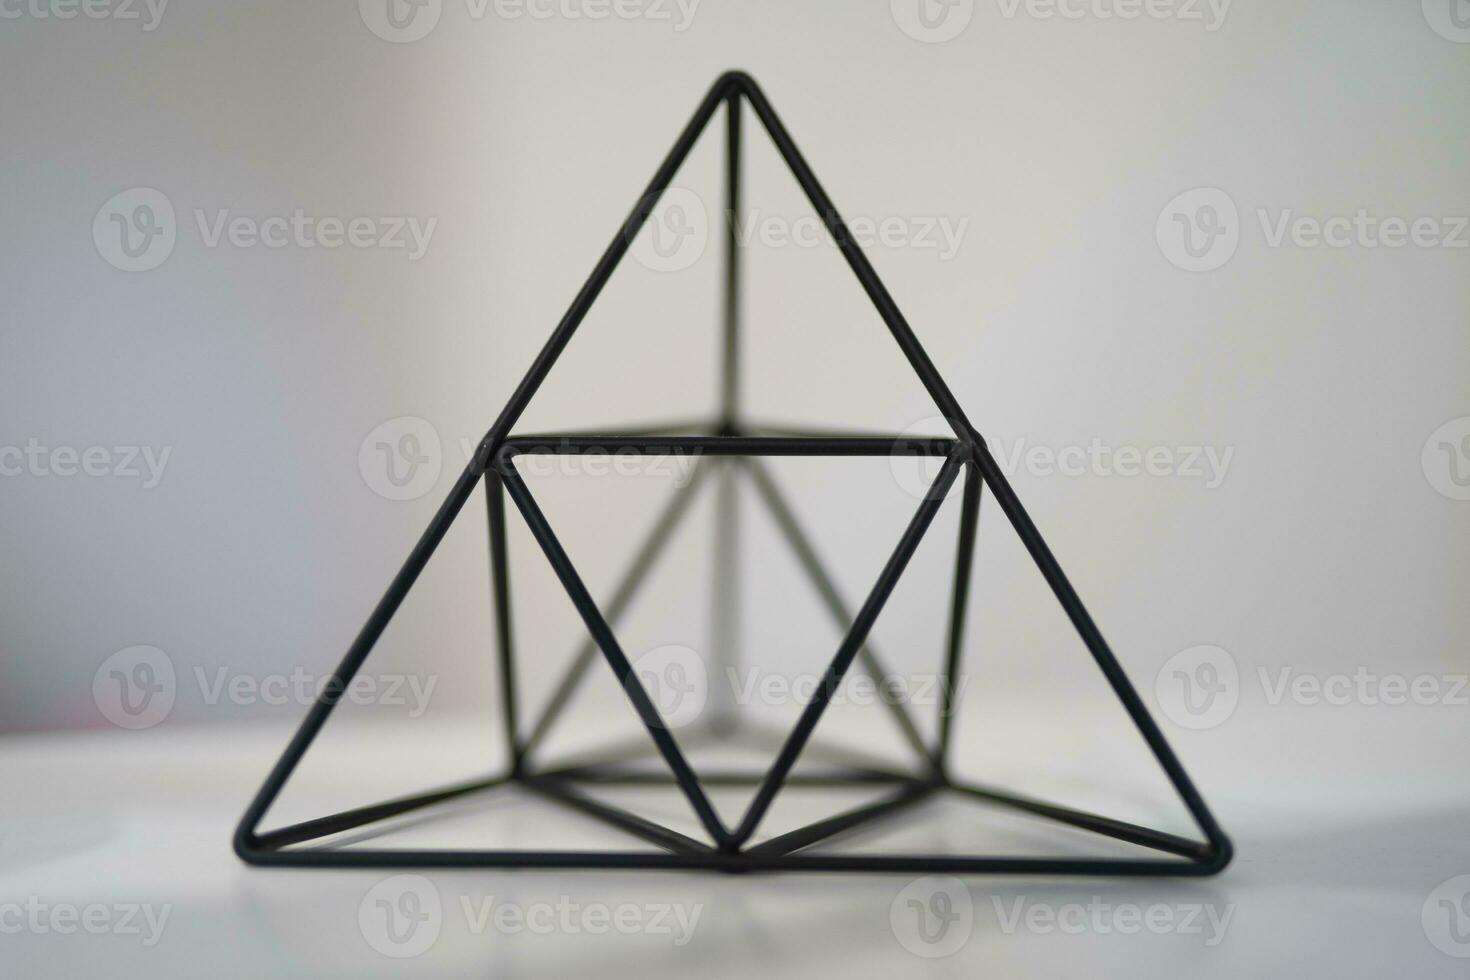 mooi meetkundig vorm van een driehoek voor decoratie foto